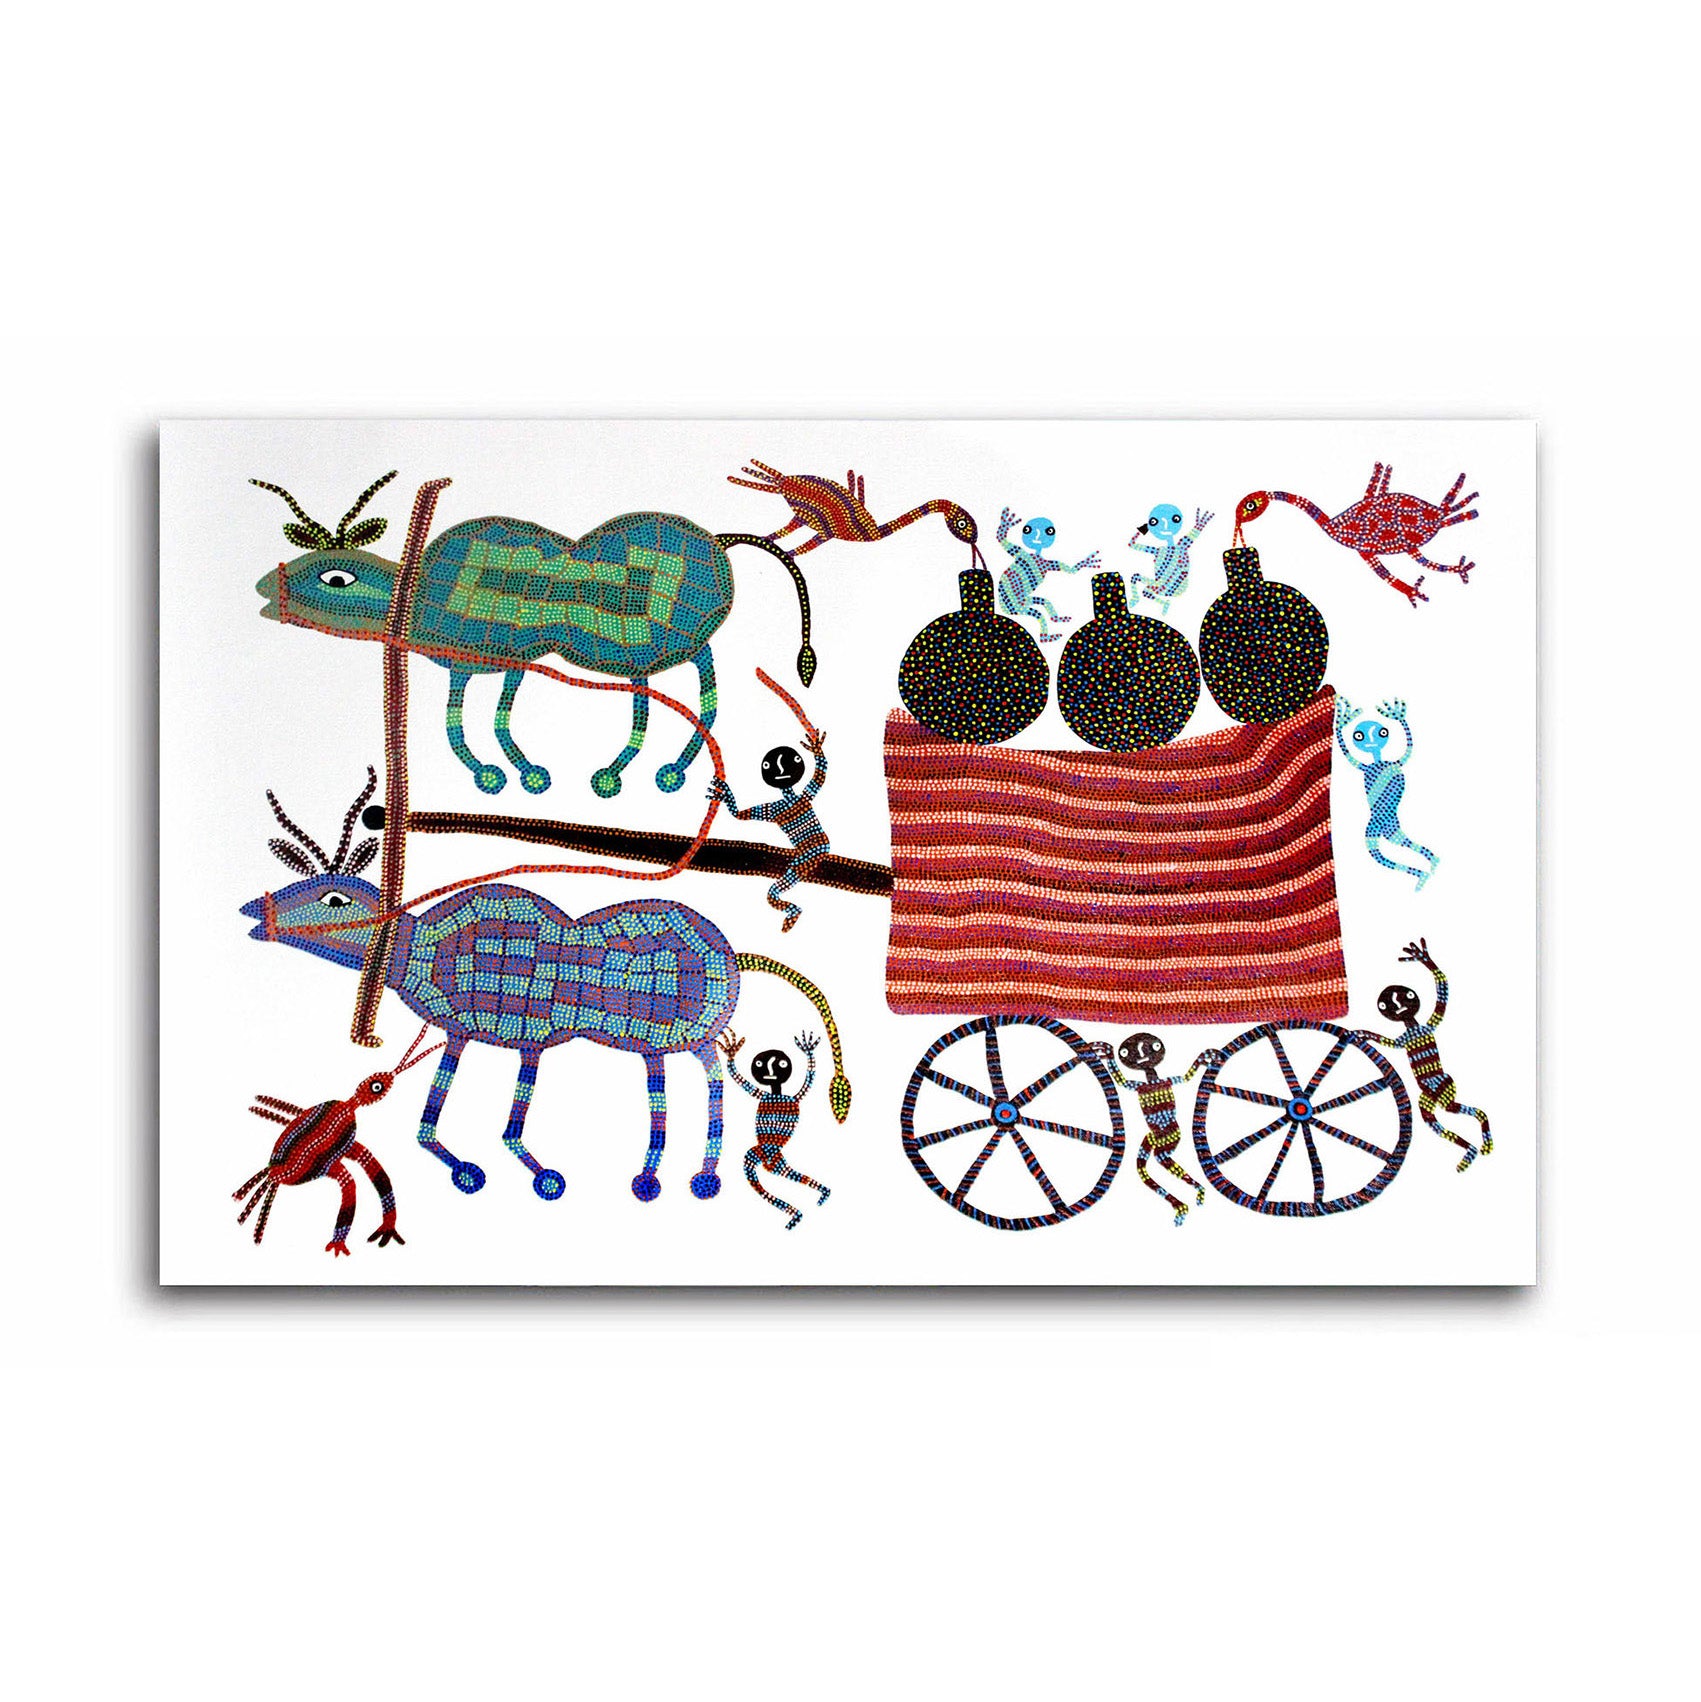 A Bullock Cart